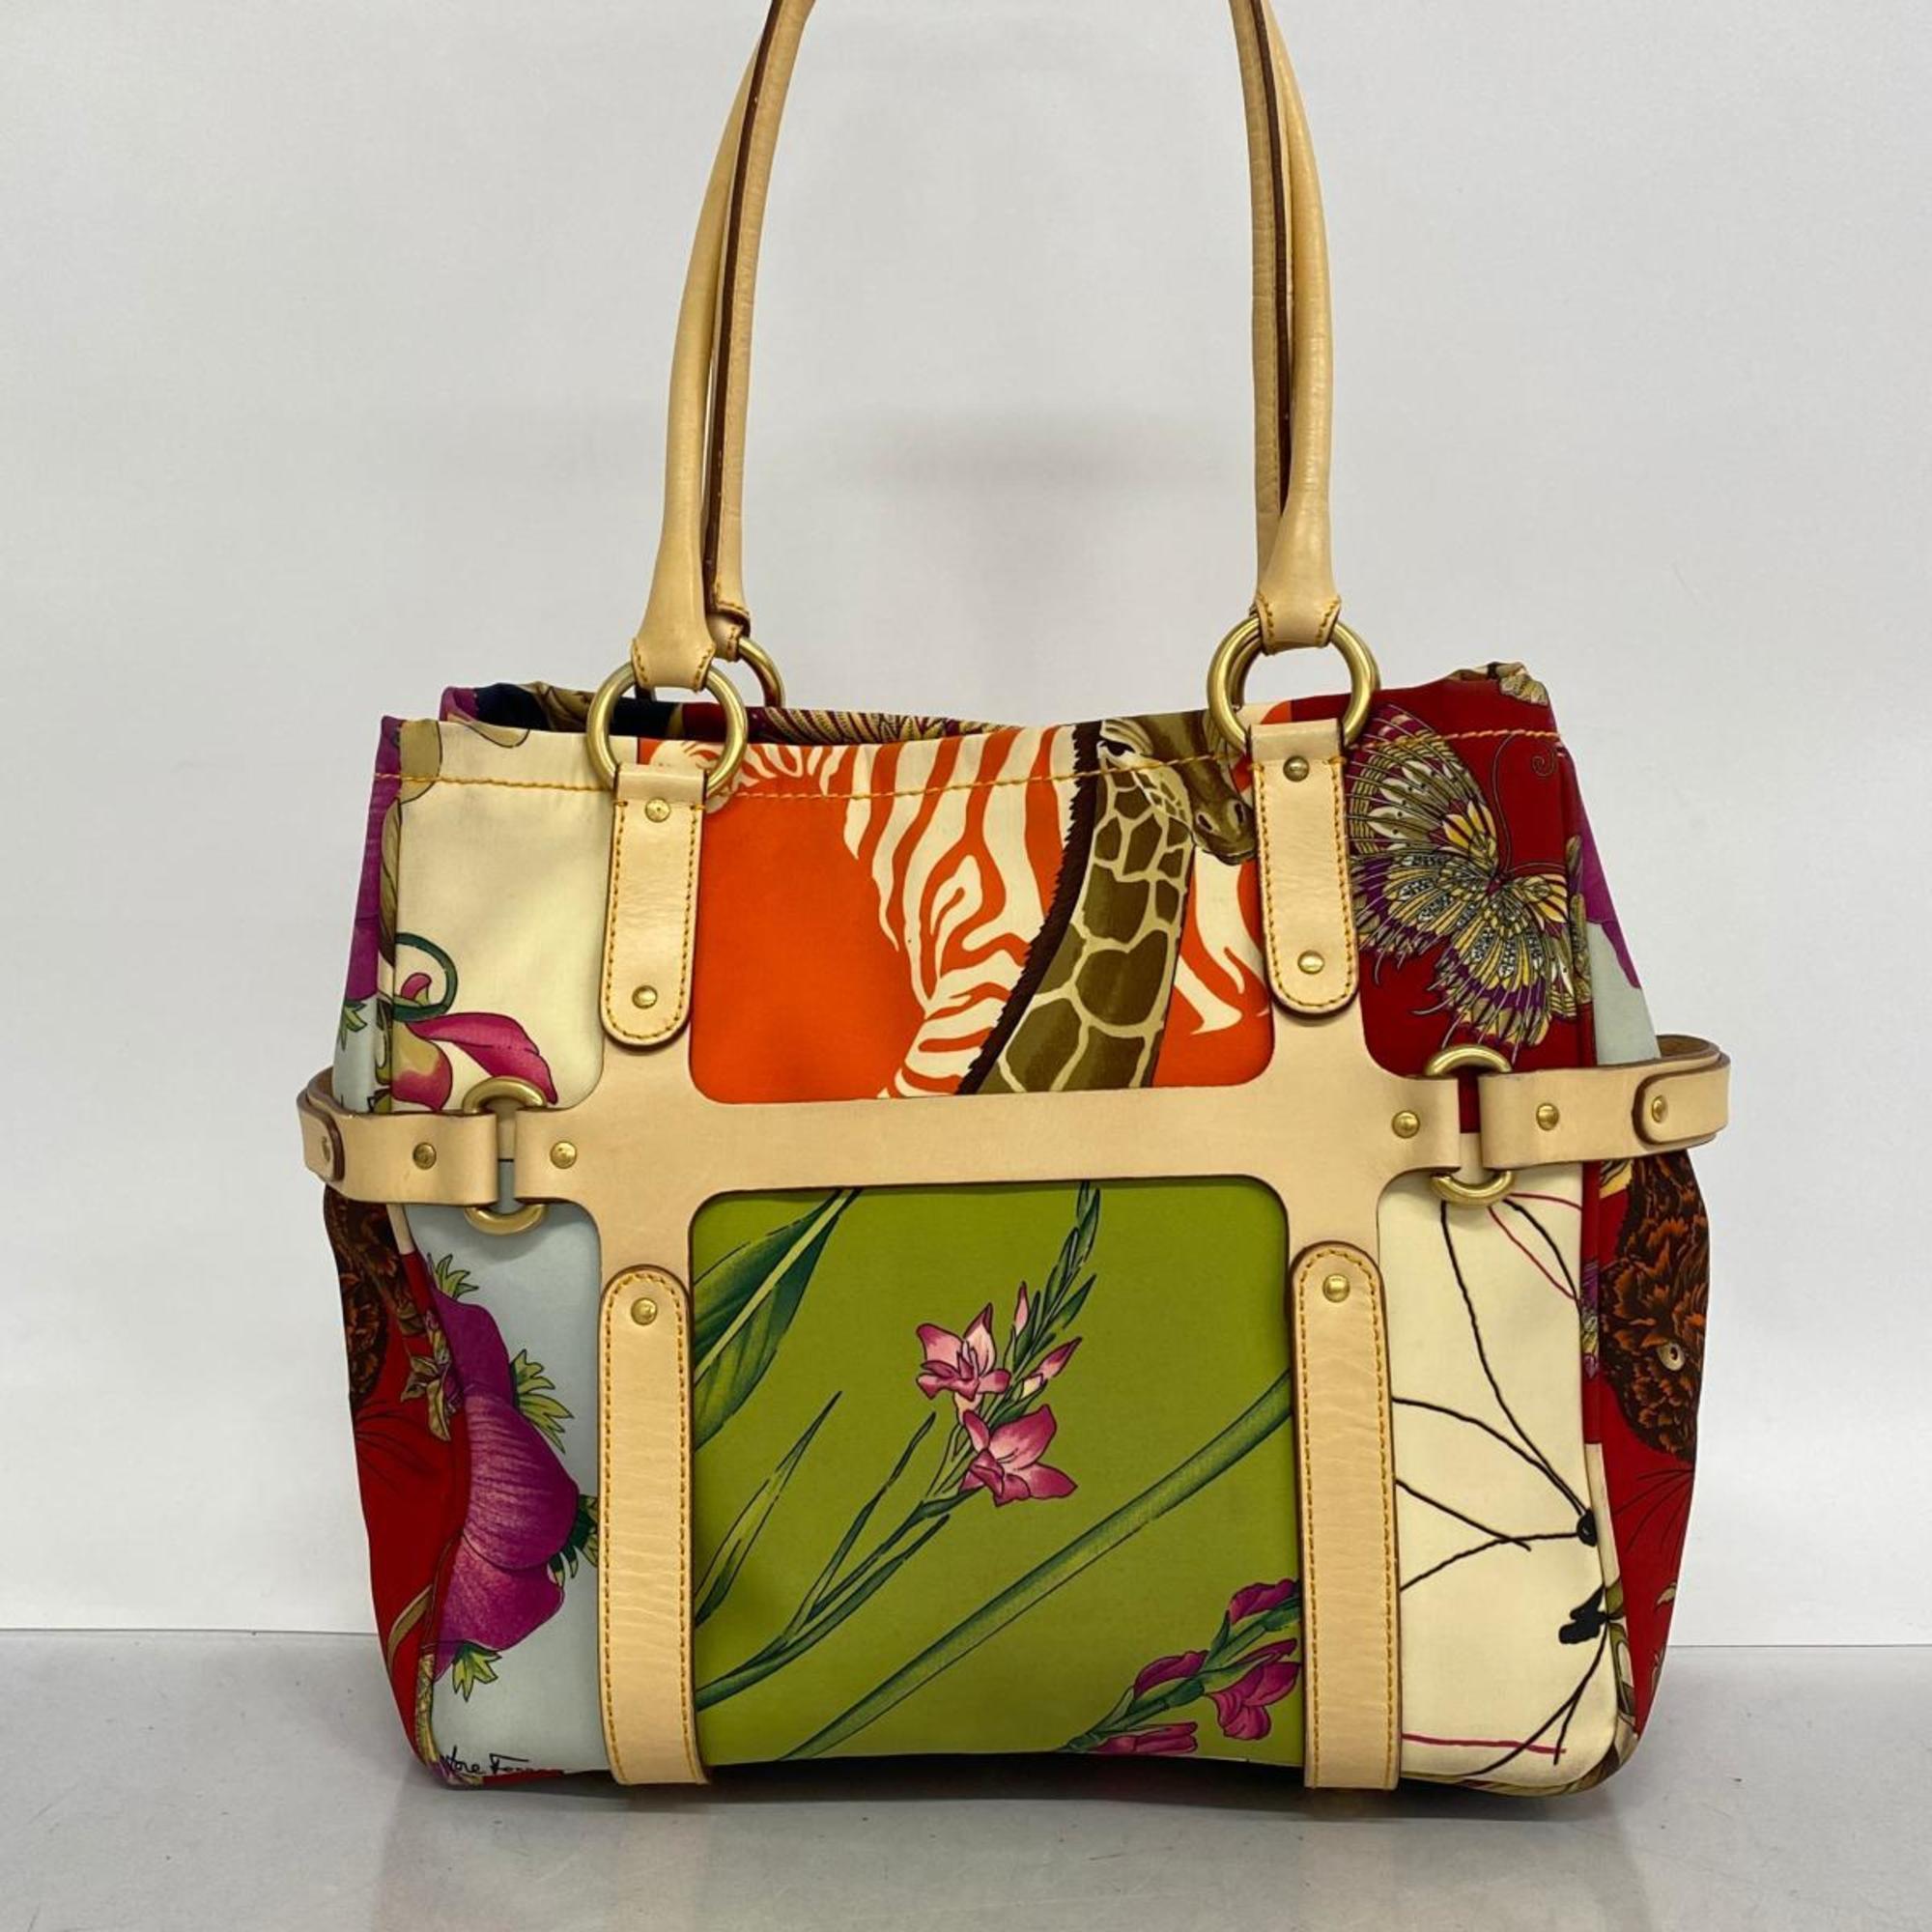 Salvatore Ferragamo Tote Bag Nylon Leather Multicolor Women's